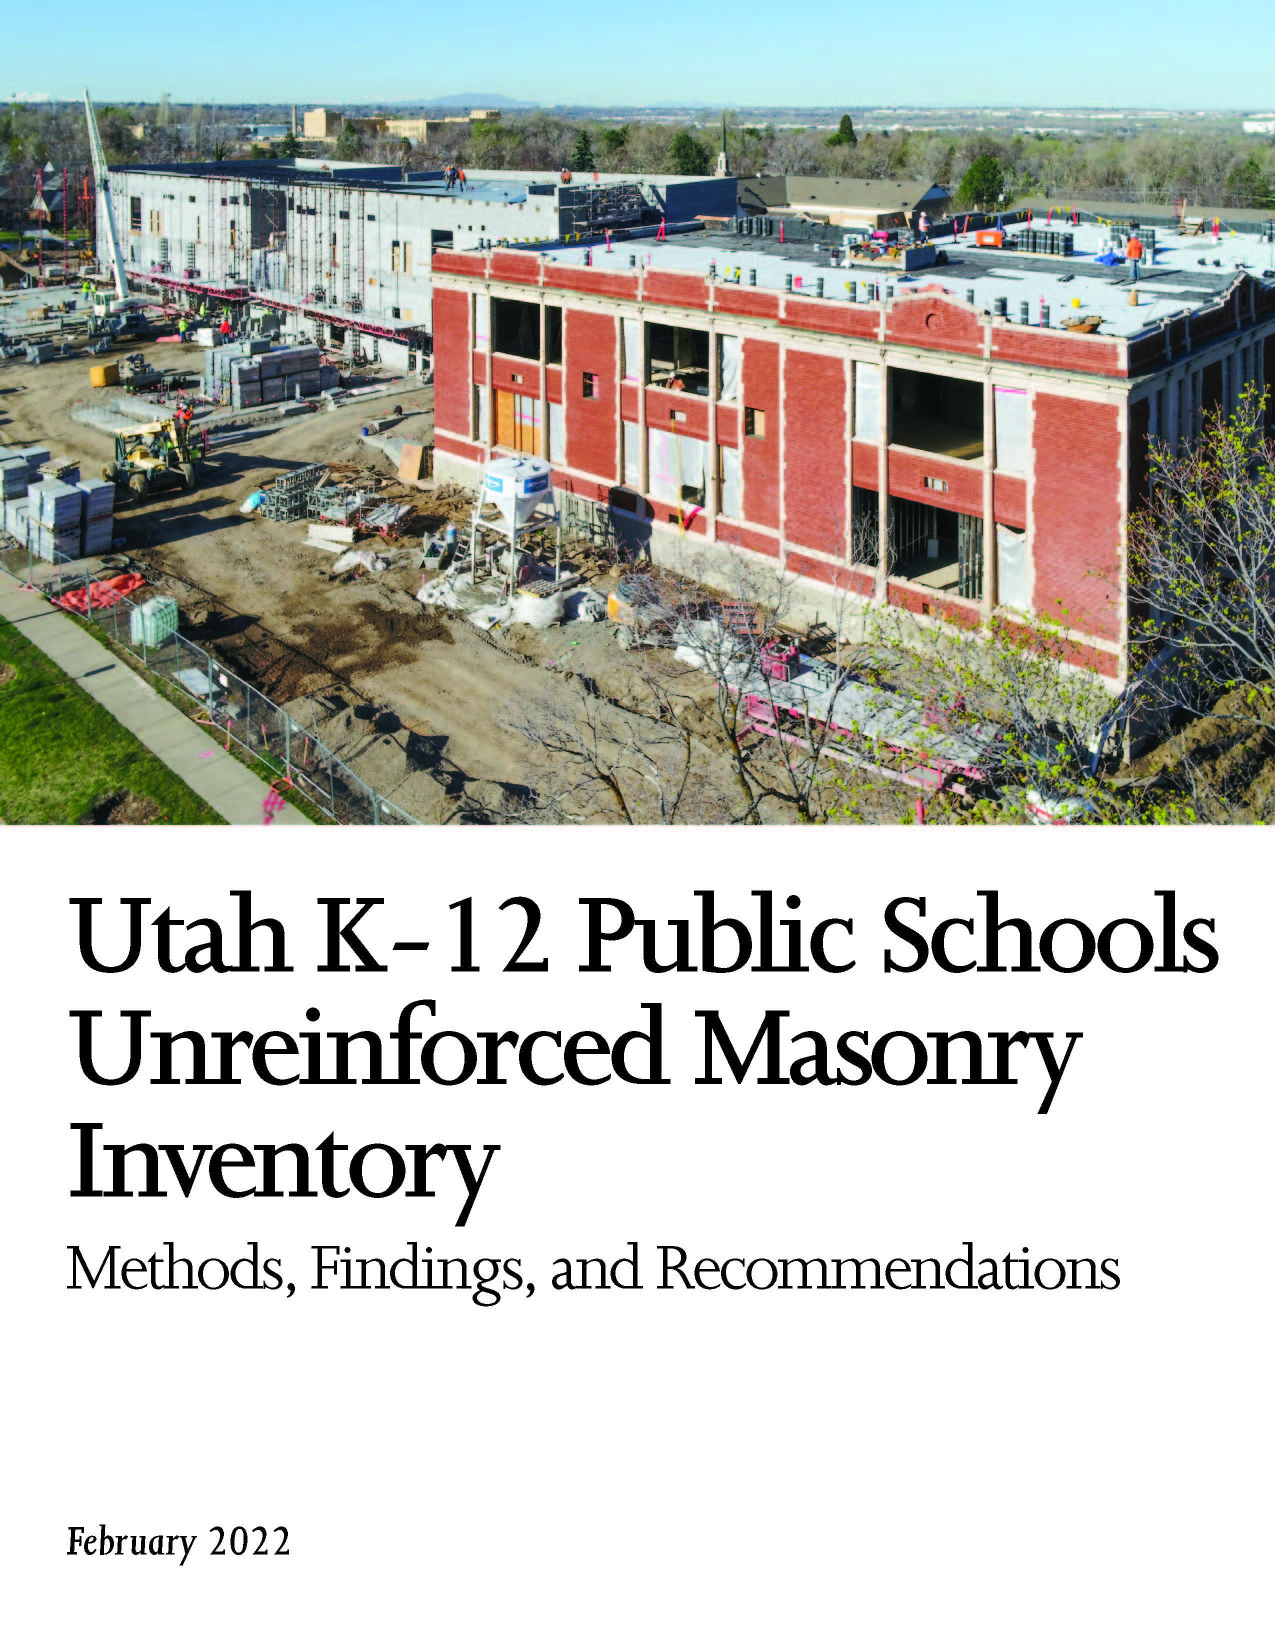 Utah K 12 Public Schools URM Inventory 2022